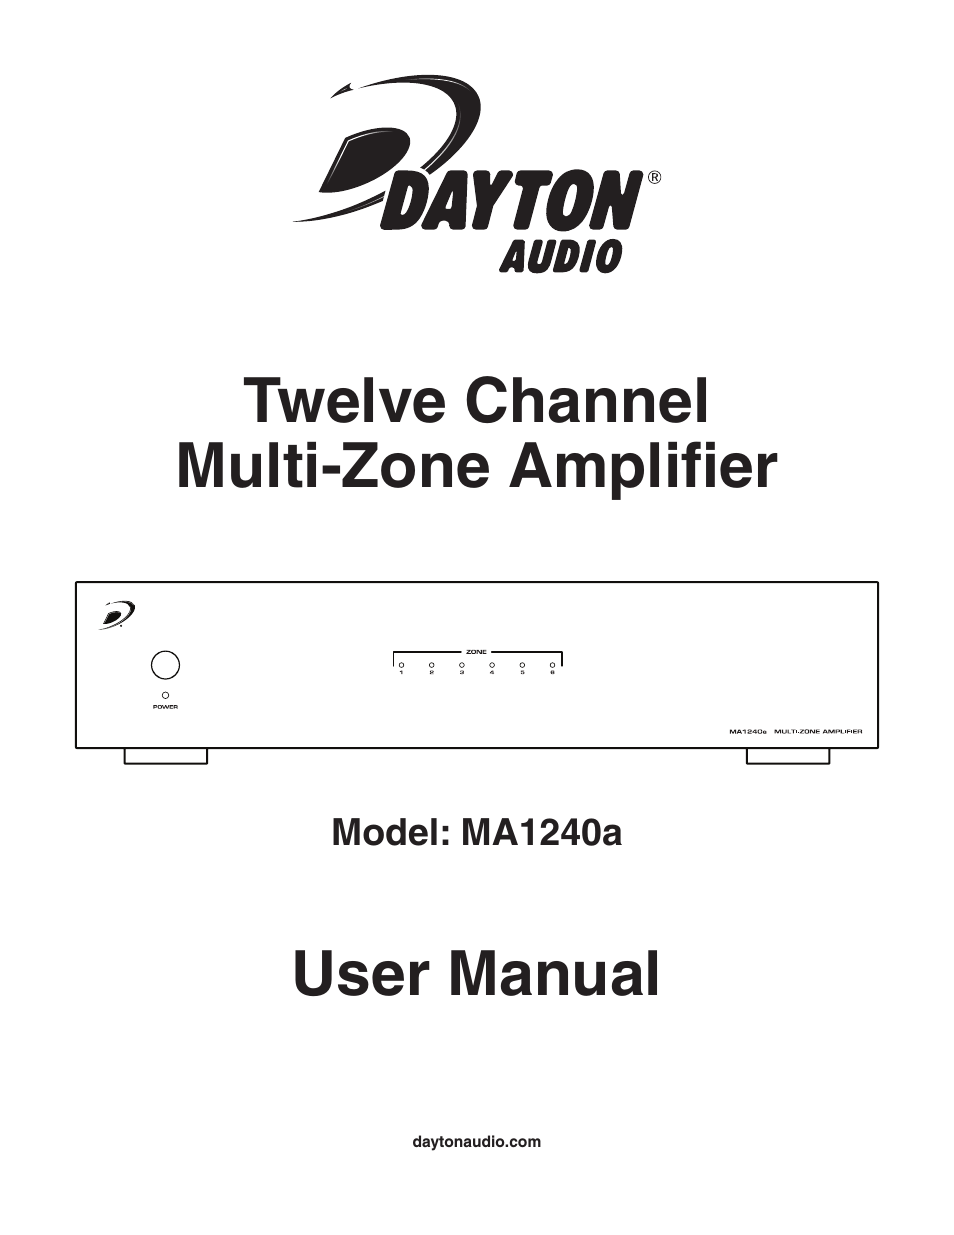 MA1240a Multi-Zone 12 Channel Amplifier